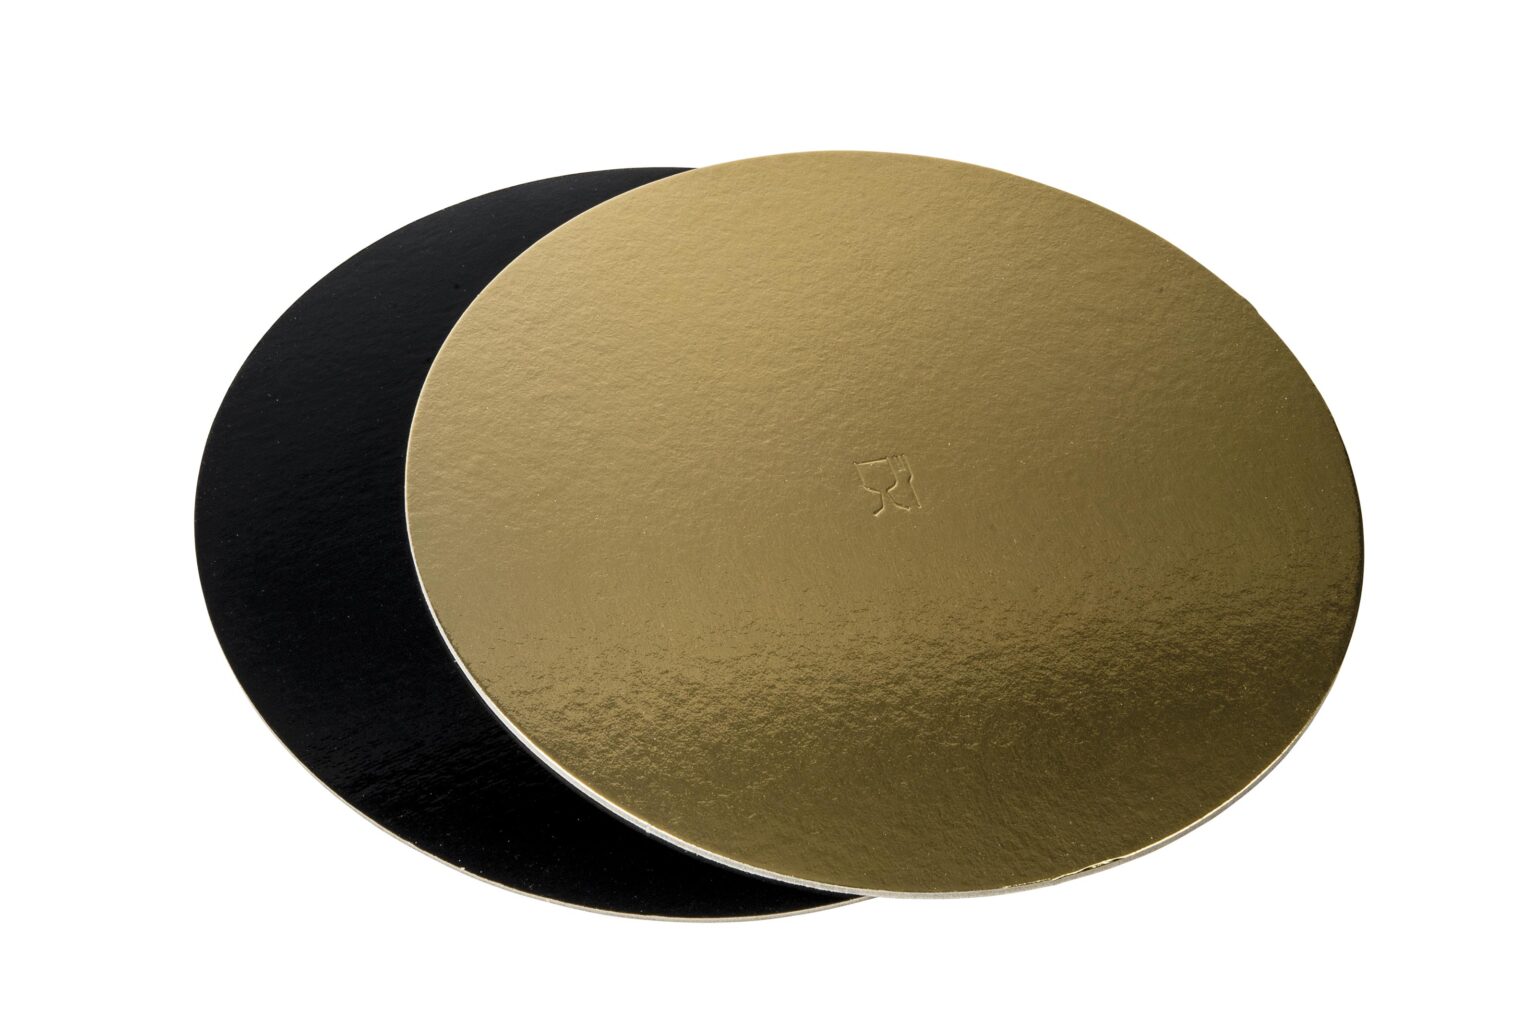 Poza Discuri groase auriu/negru - Discuri groase auriu/negru 2400 gr OE36cm - 10 buc/set